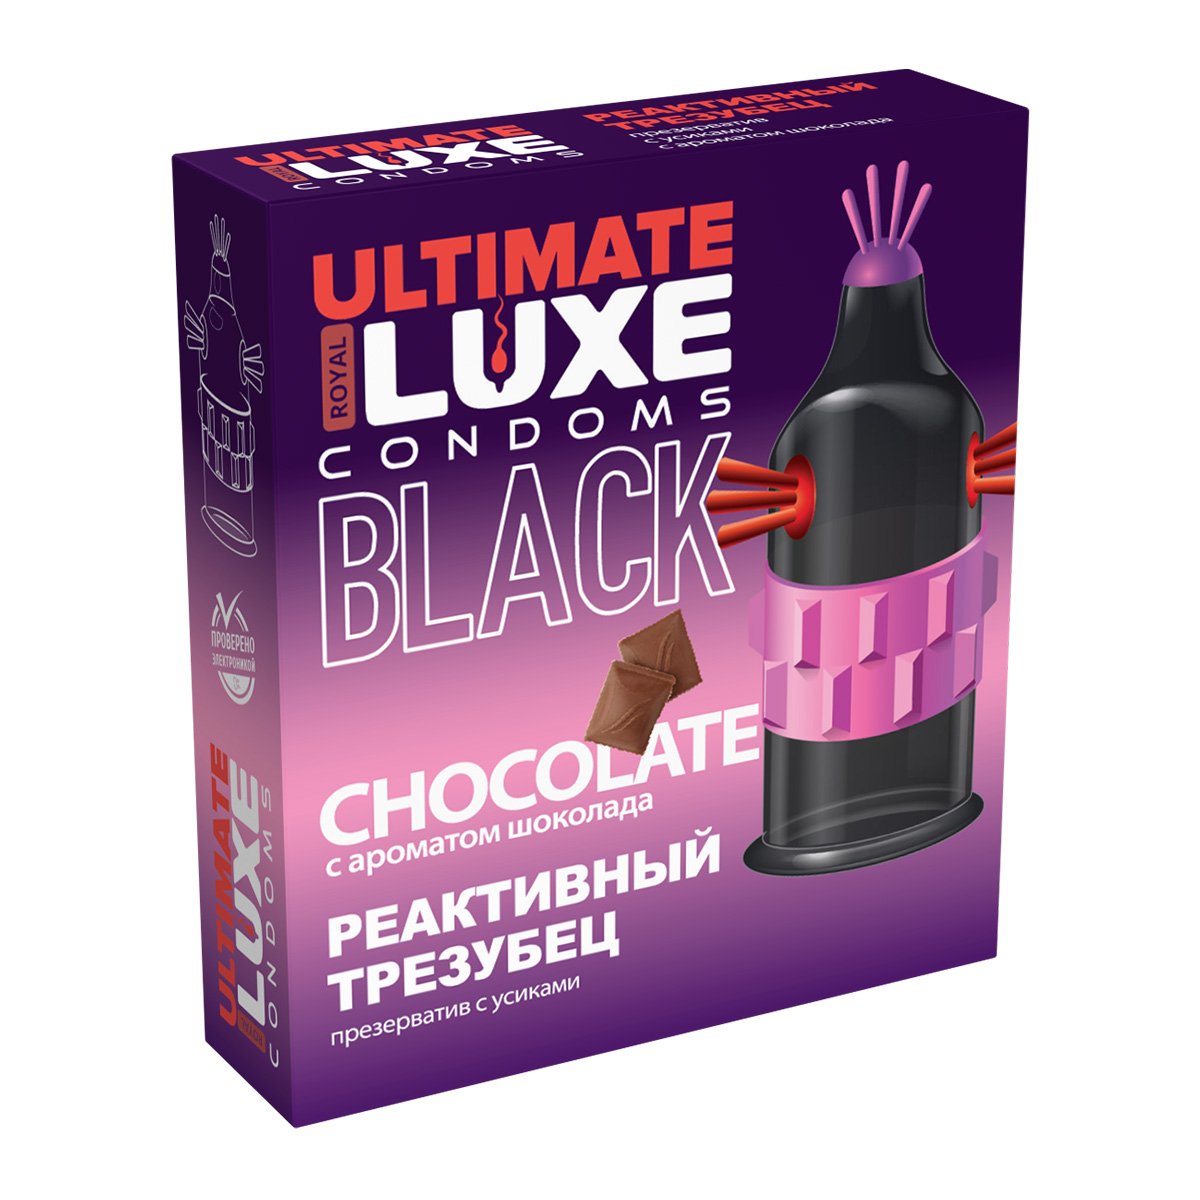 	Эксклюзивный черный презерватив  Luxe EXTREME  BLACK ULTIMATEРЕАКТИВНЫЙ ТРЕЗУБЕЦ (Шоколад), 1 шт.